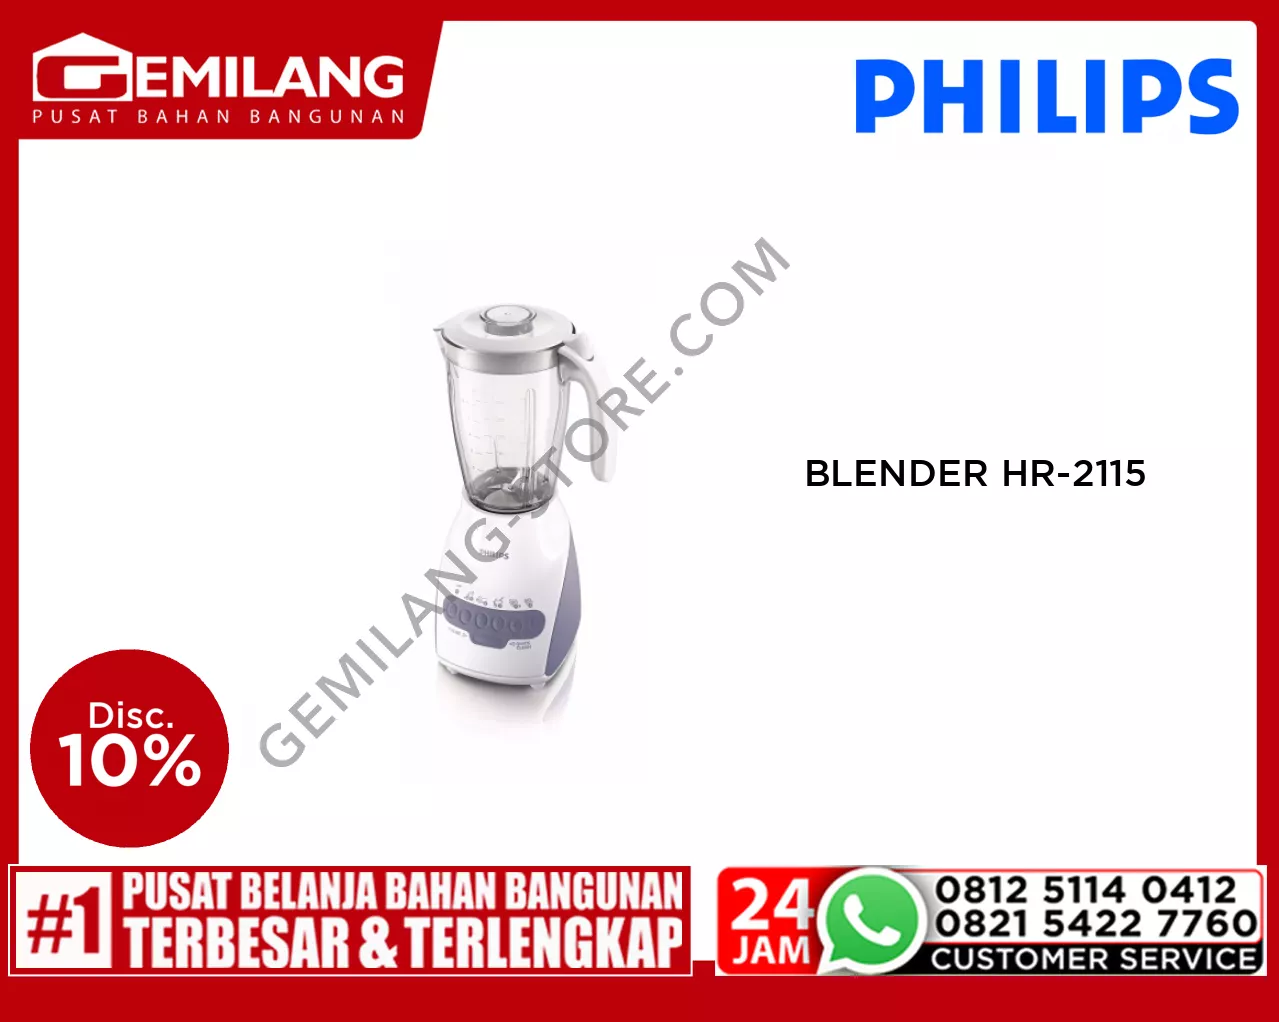 PHILIPS BLENDER HR-2115